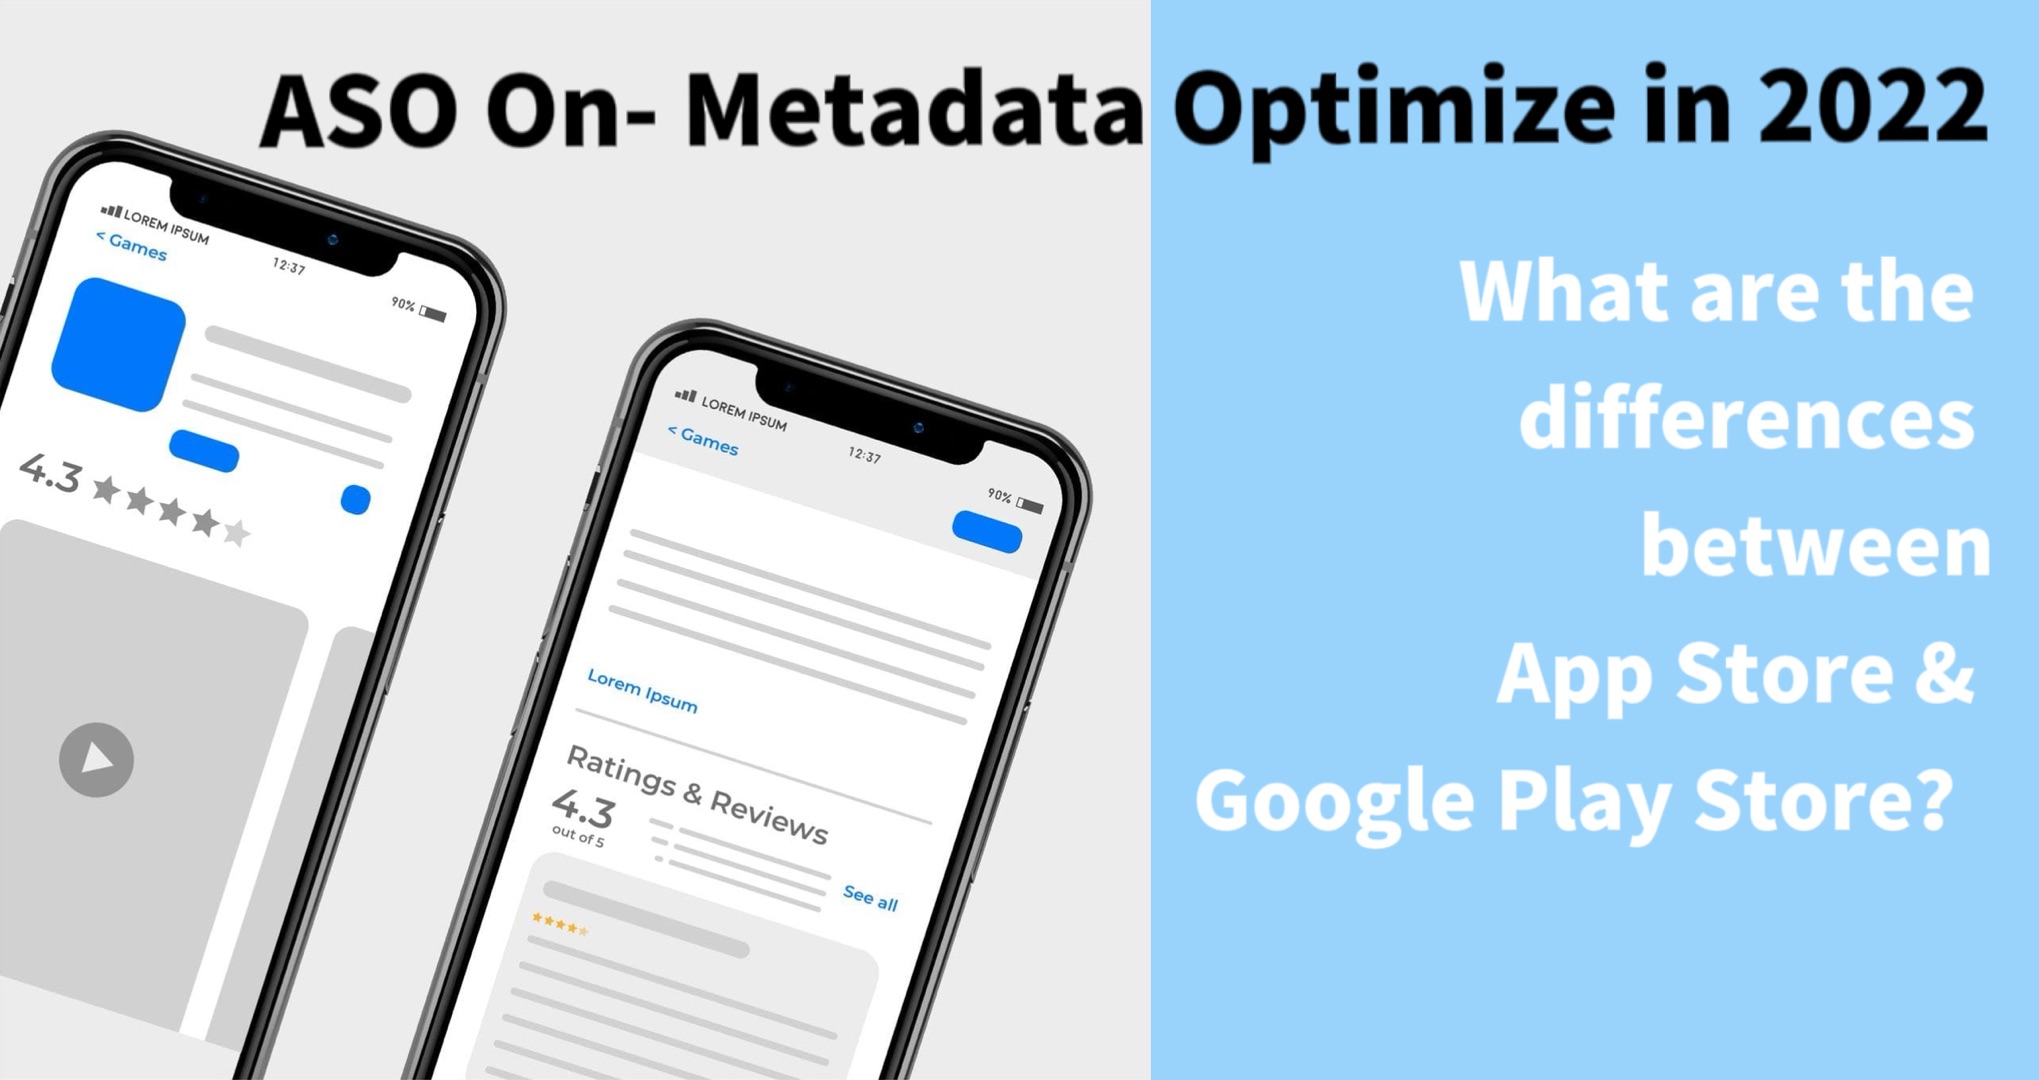 ASO On-Metadata Optimization